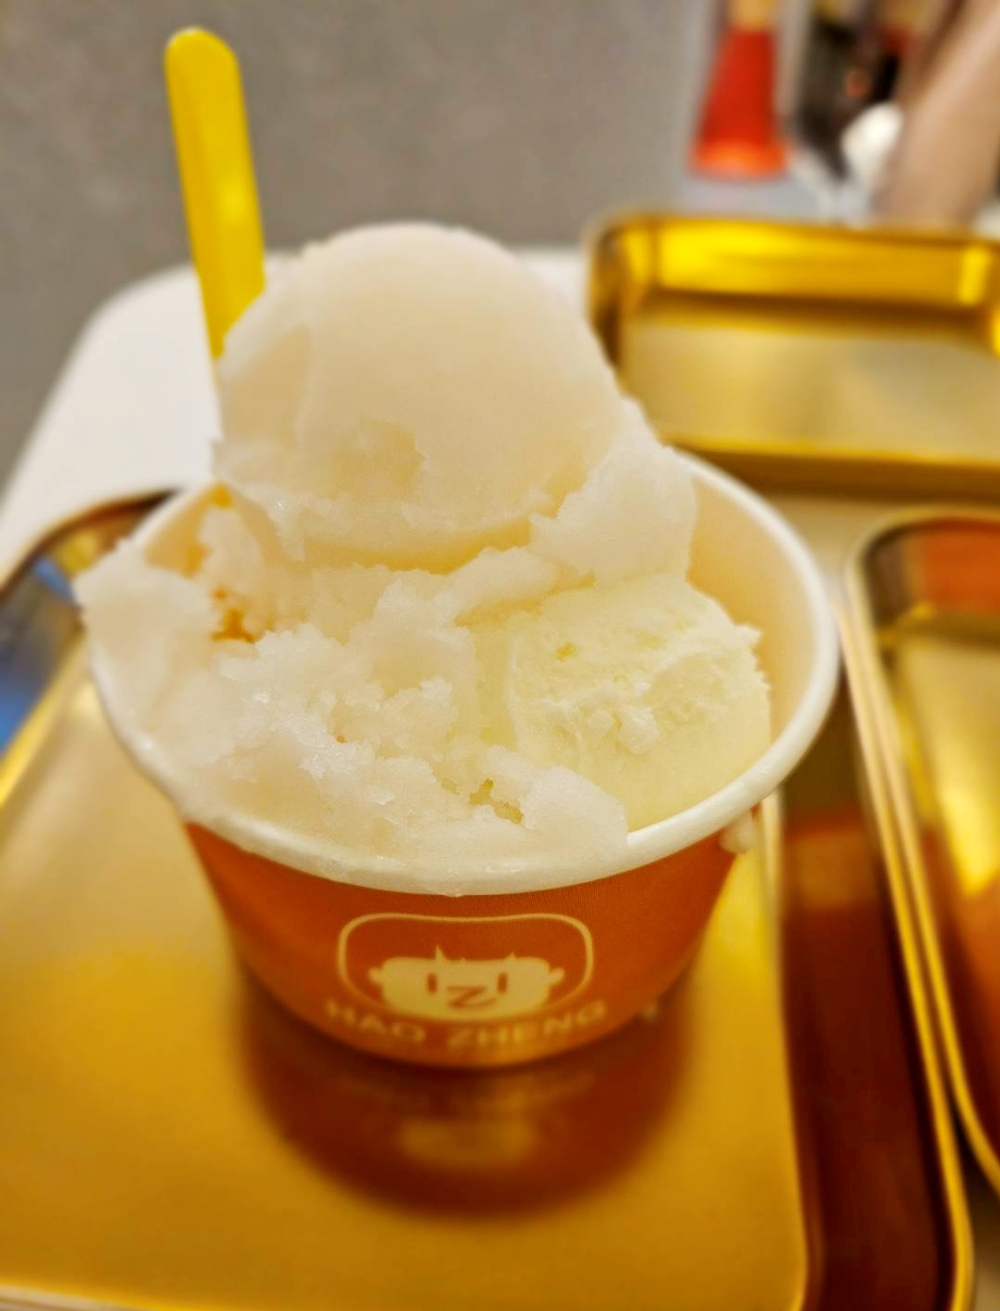 好正商行HAO ZHENG梅乃宿柚子酒冰淇淋與海鹽起司蛋糕冰淇淋